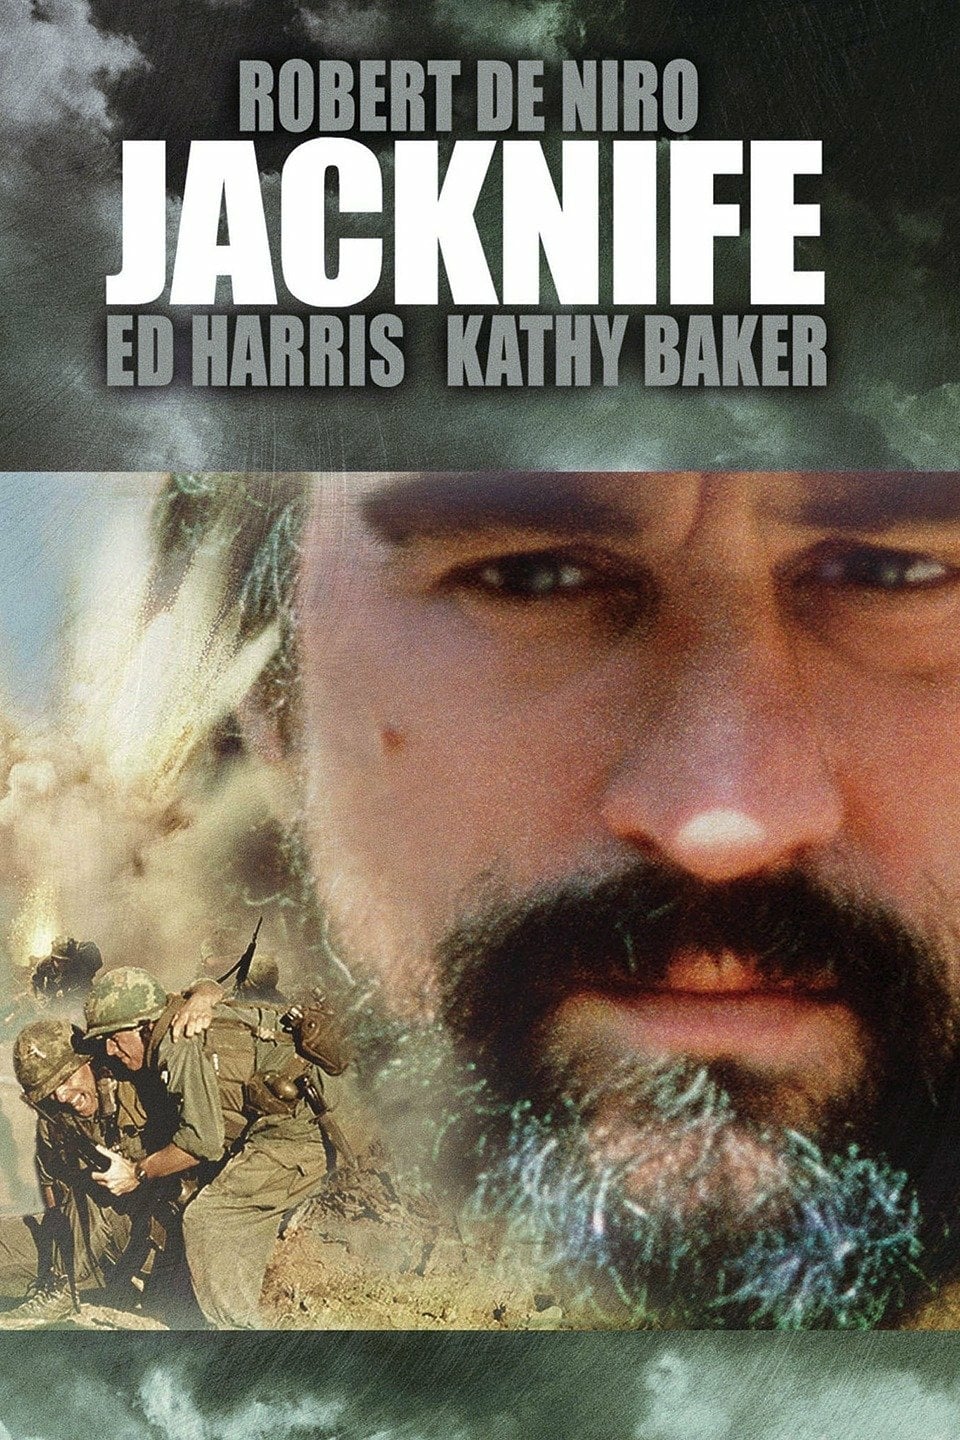 Plakat von "Jacknife - Vom Leben betrogen"